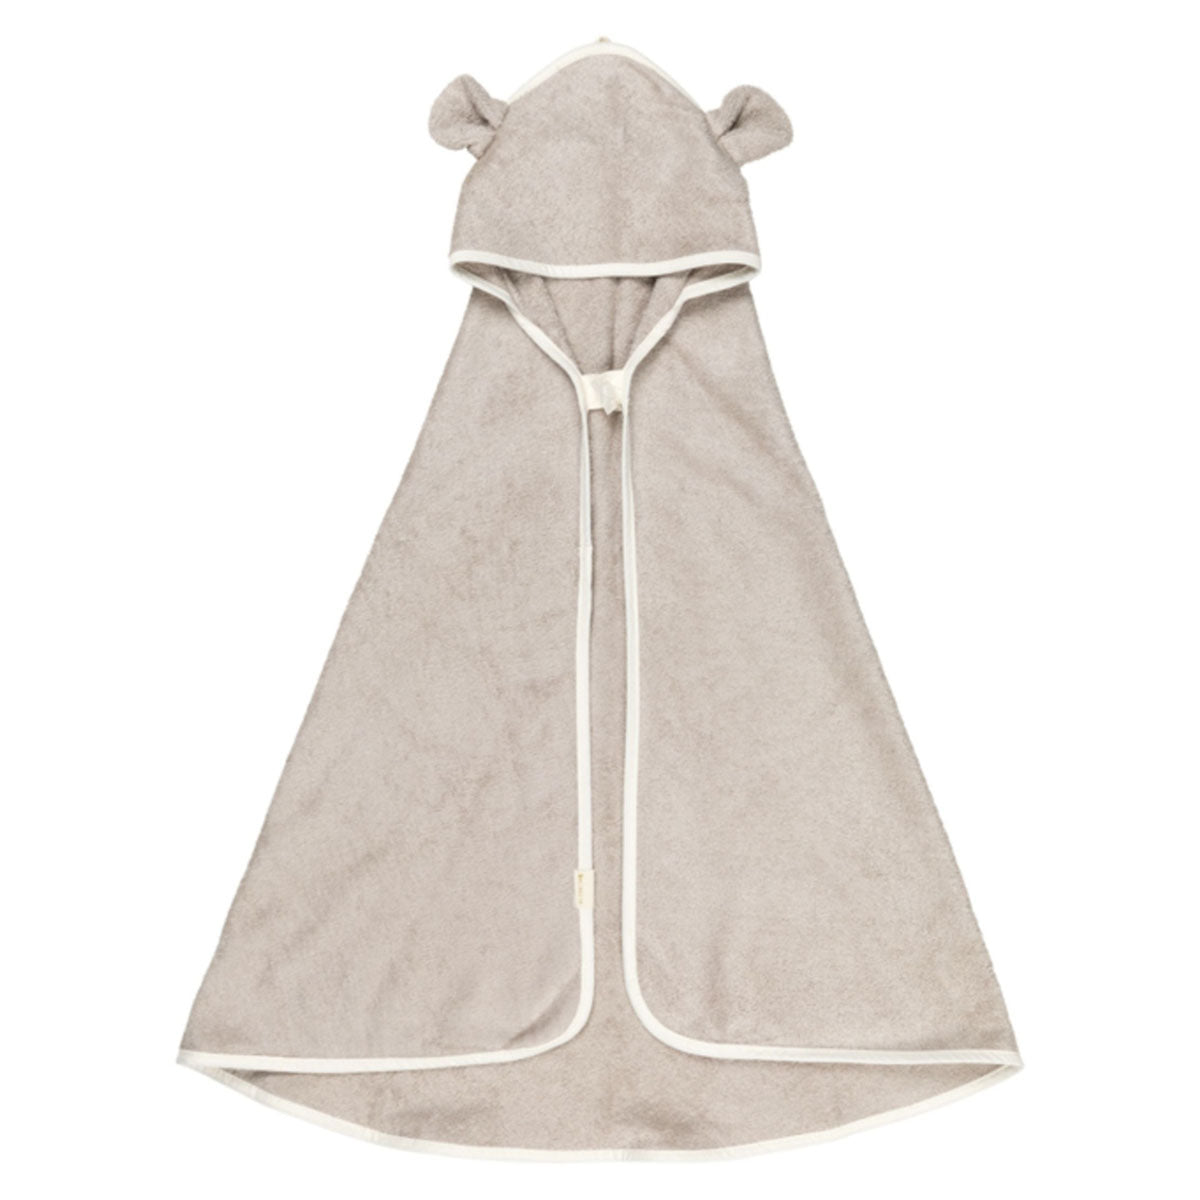 Pak jouw kindje heerlijk warm in na het badderen met de badcape baby bear van Fabelab. Het zachte beige kleurige handdoekje heeft schattige berenoortjes en een handig drukknoopje. Leuk als kraamcadeau. VanZus